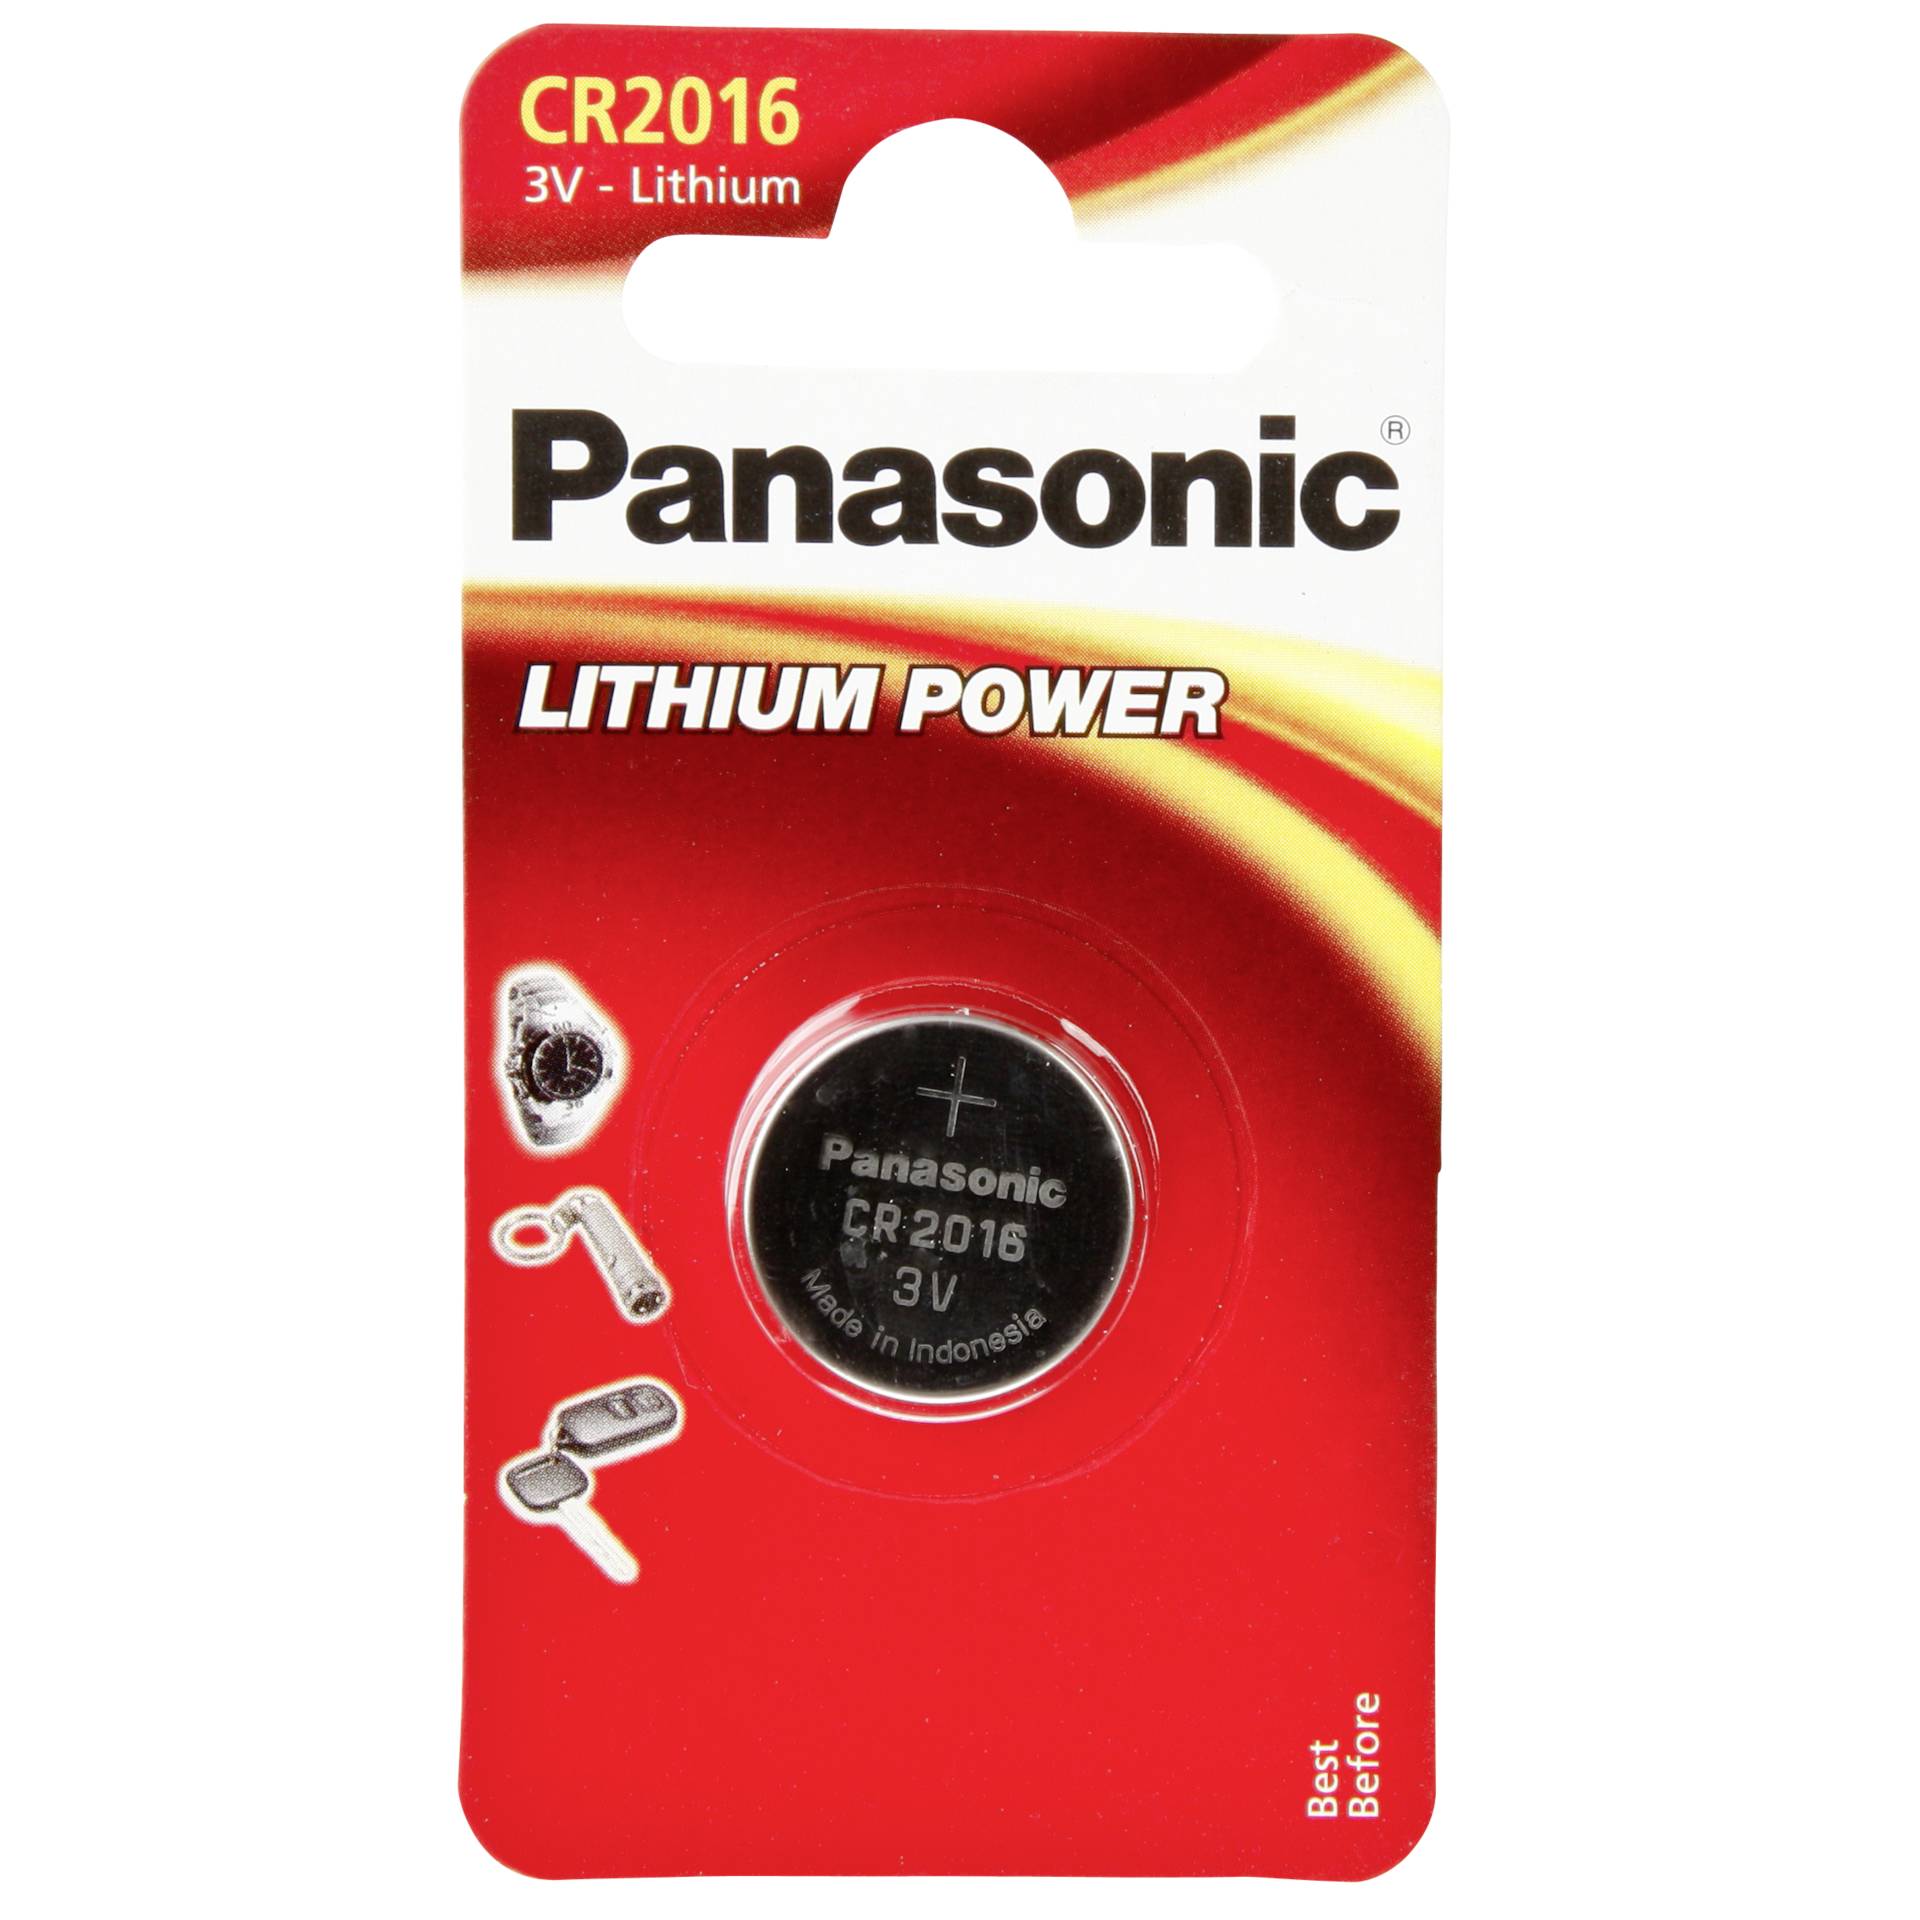 1 Panasonic CR 2016 Lithium Power